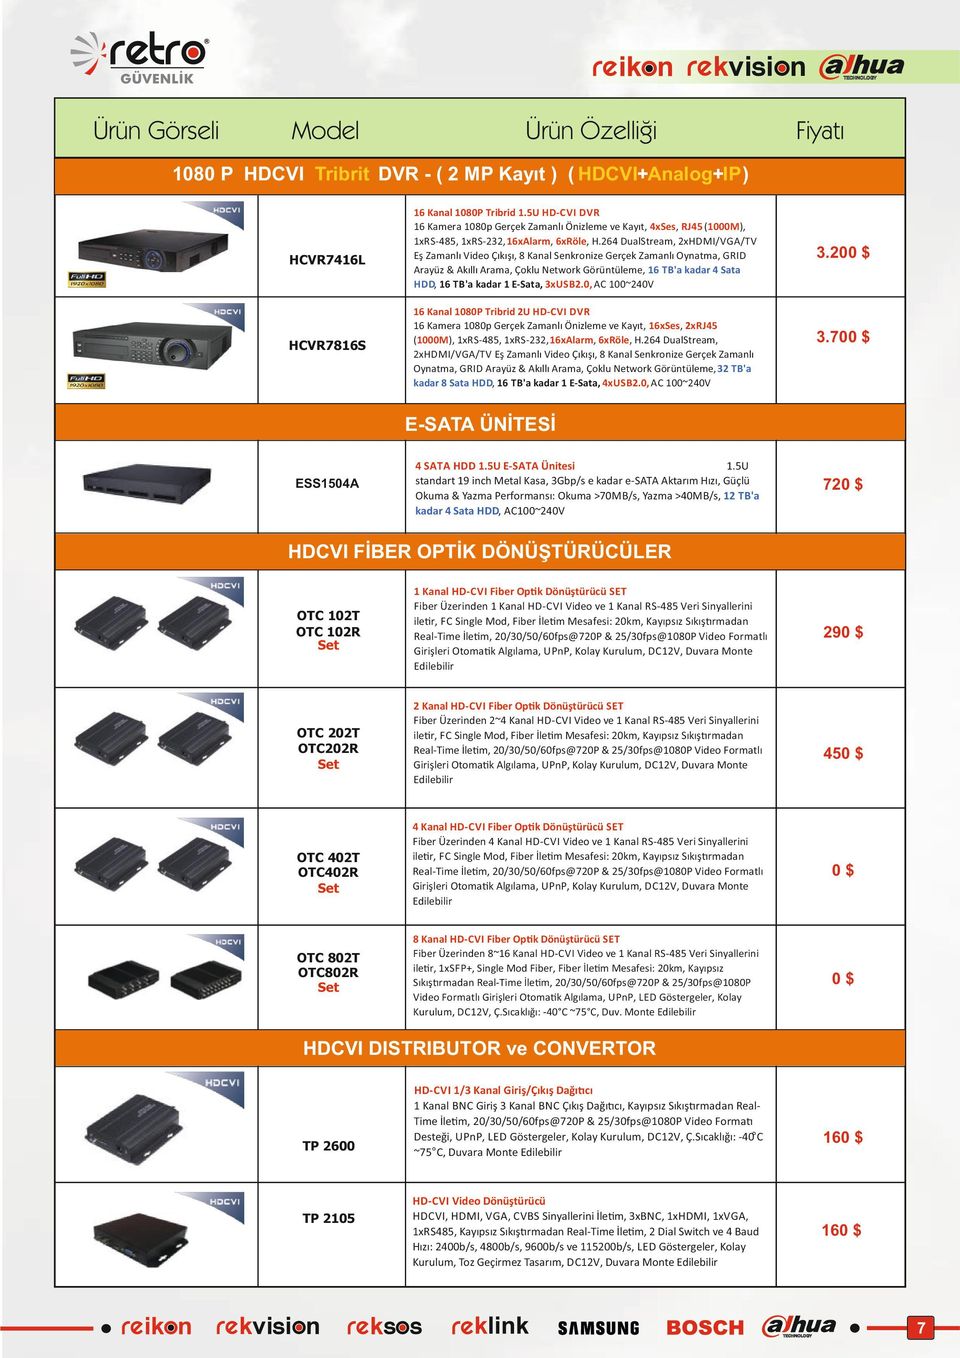 26 DualStream, 2xHDMI/VGA/TV Arayüz & Akıllı Arama, Çoklu Network Görüntüleme, TB'a kadar Sata HDD, TB'a kadar 1 E-Sata, 3xUSB2.0, AC 100~20V 3.